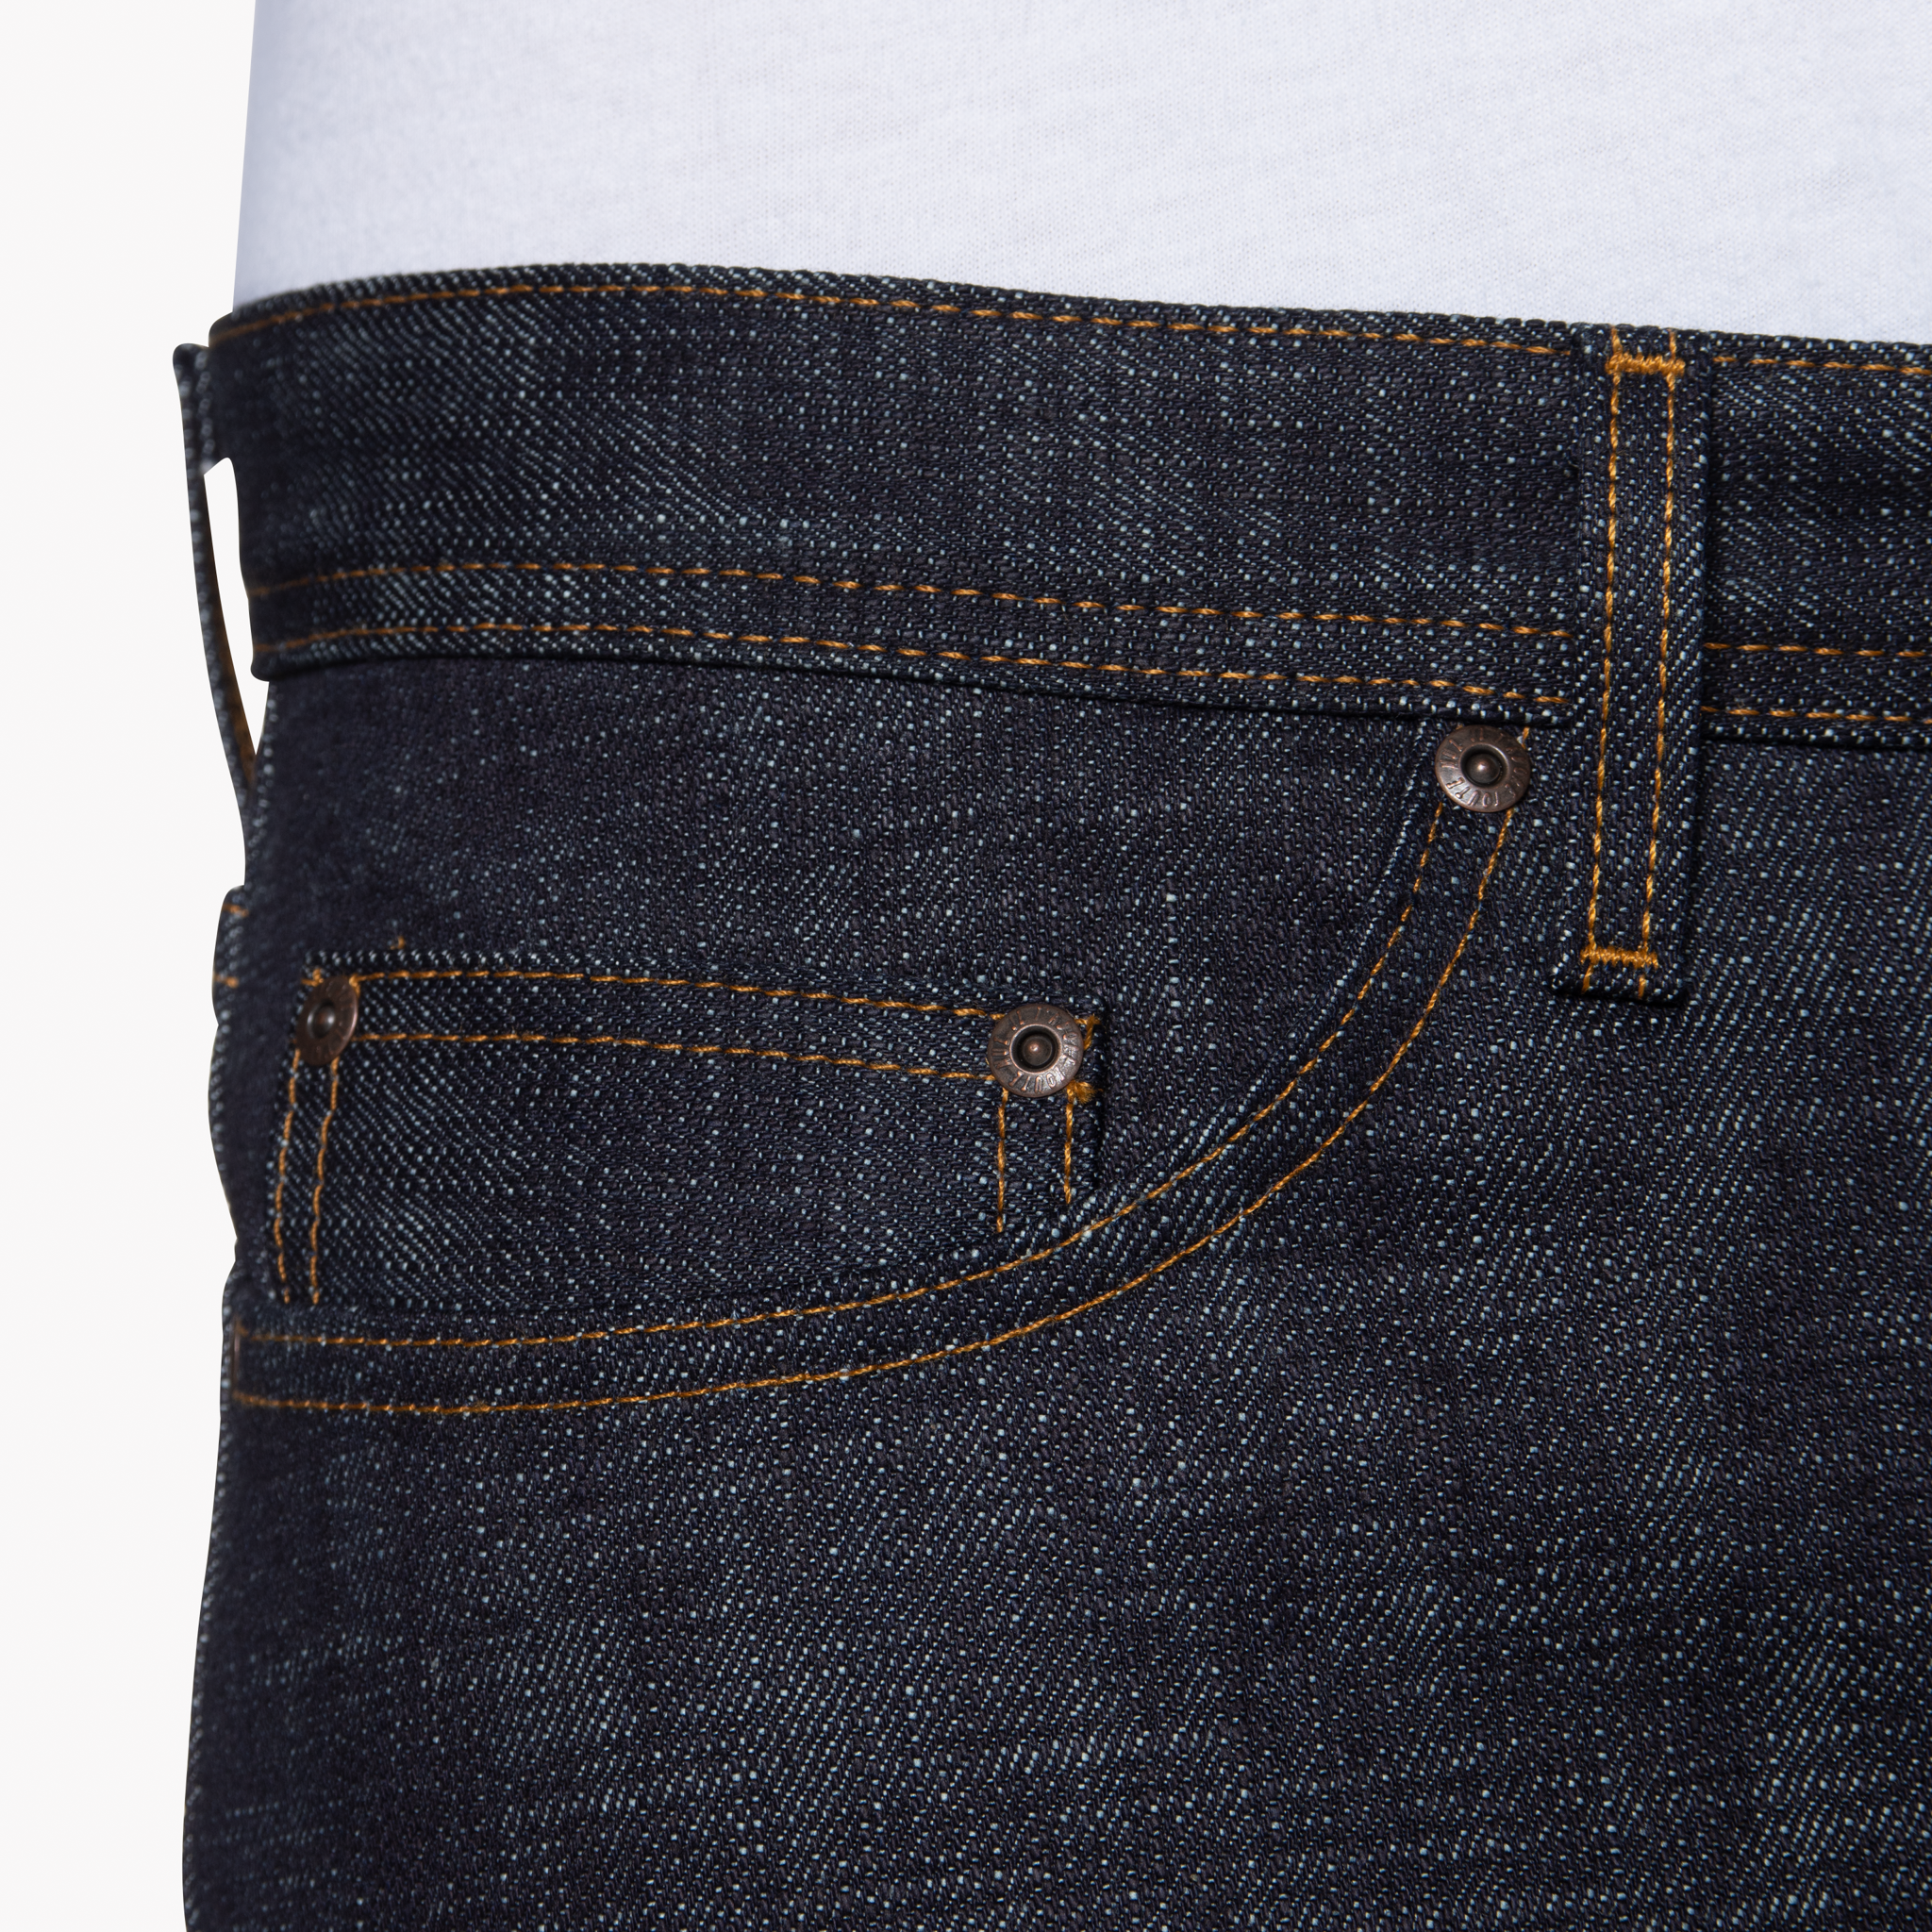  Firebird Selvedge jeans - coin pocket 